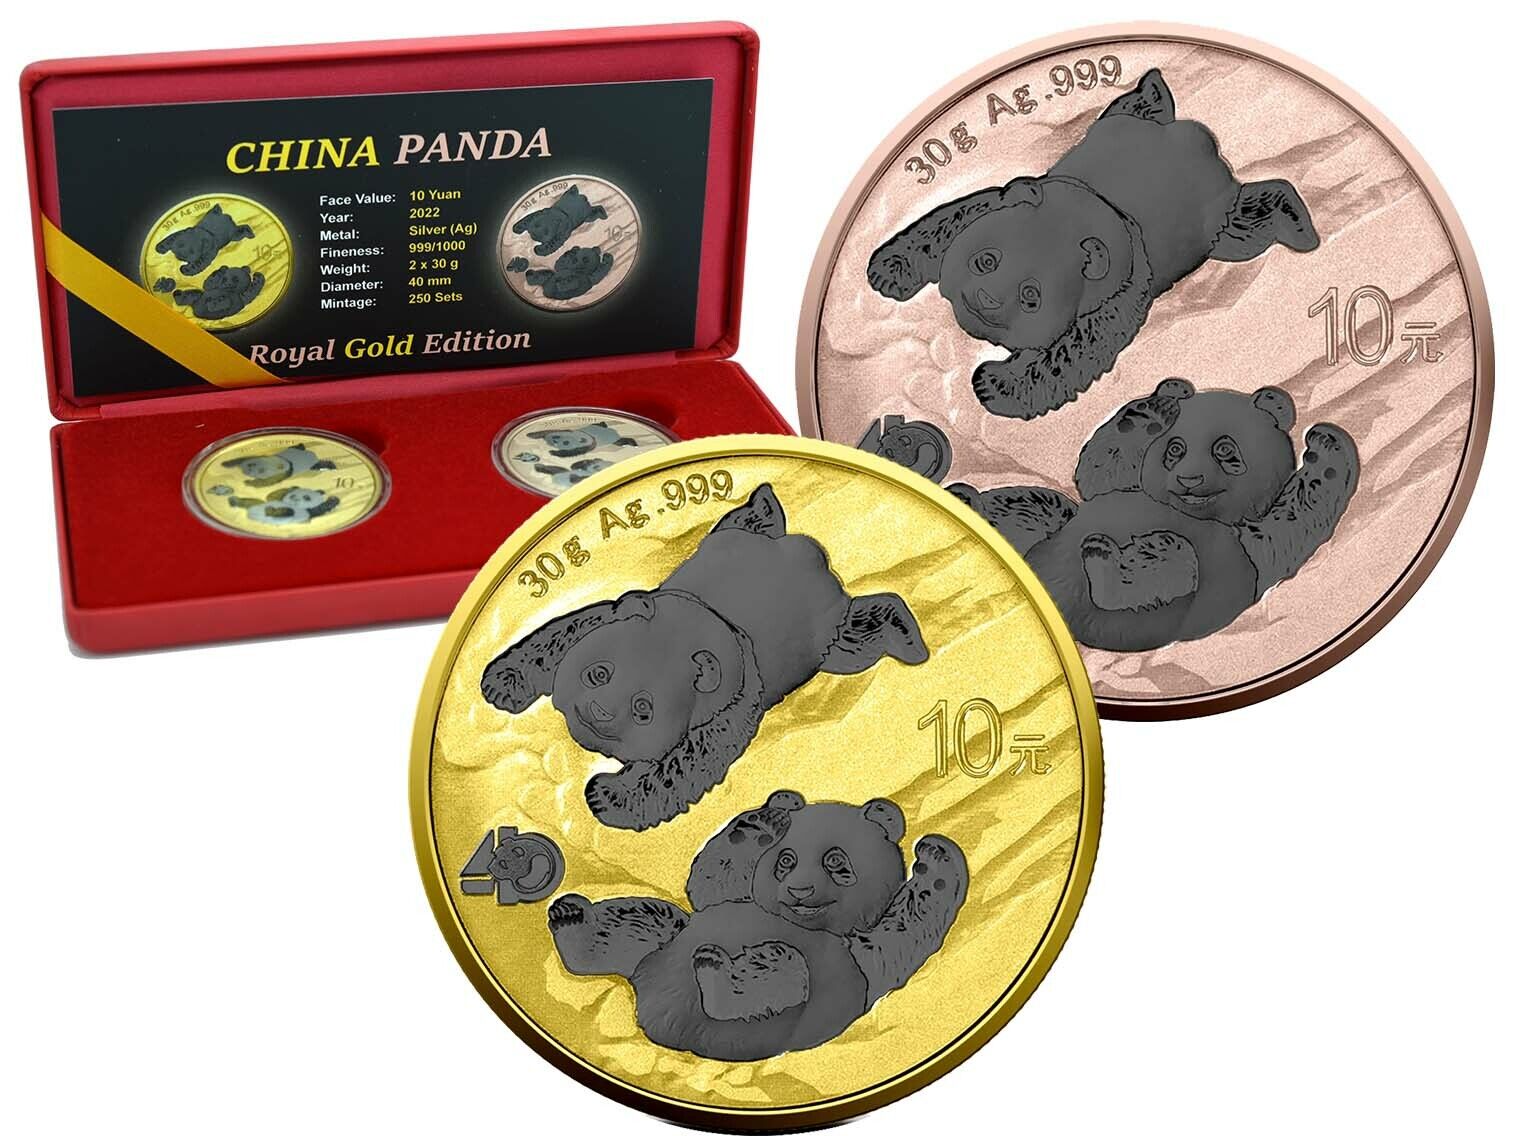 2 x Silver 10 Yuan China Panda 2022 Royal Gold Edition